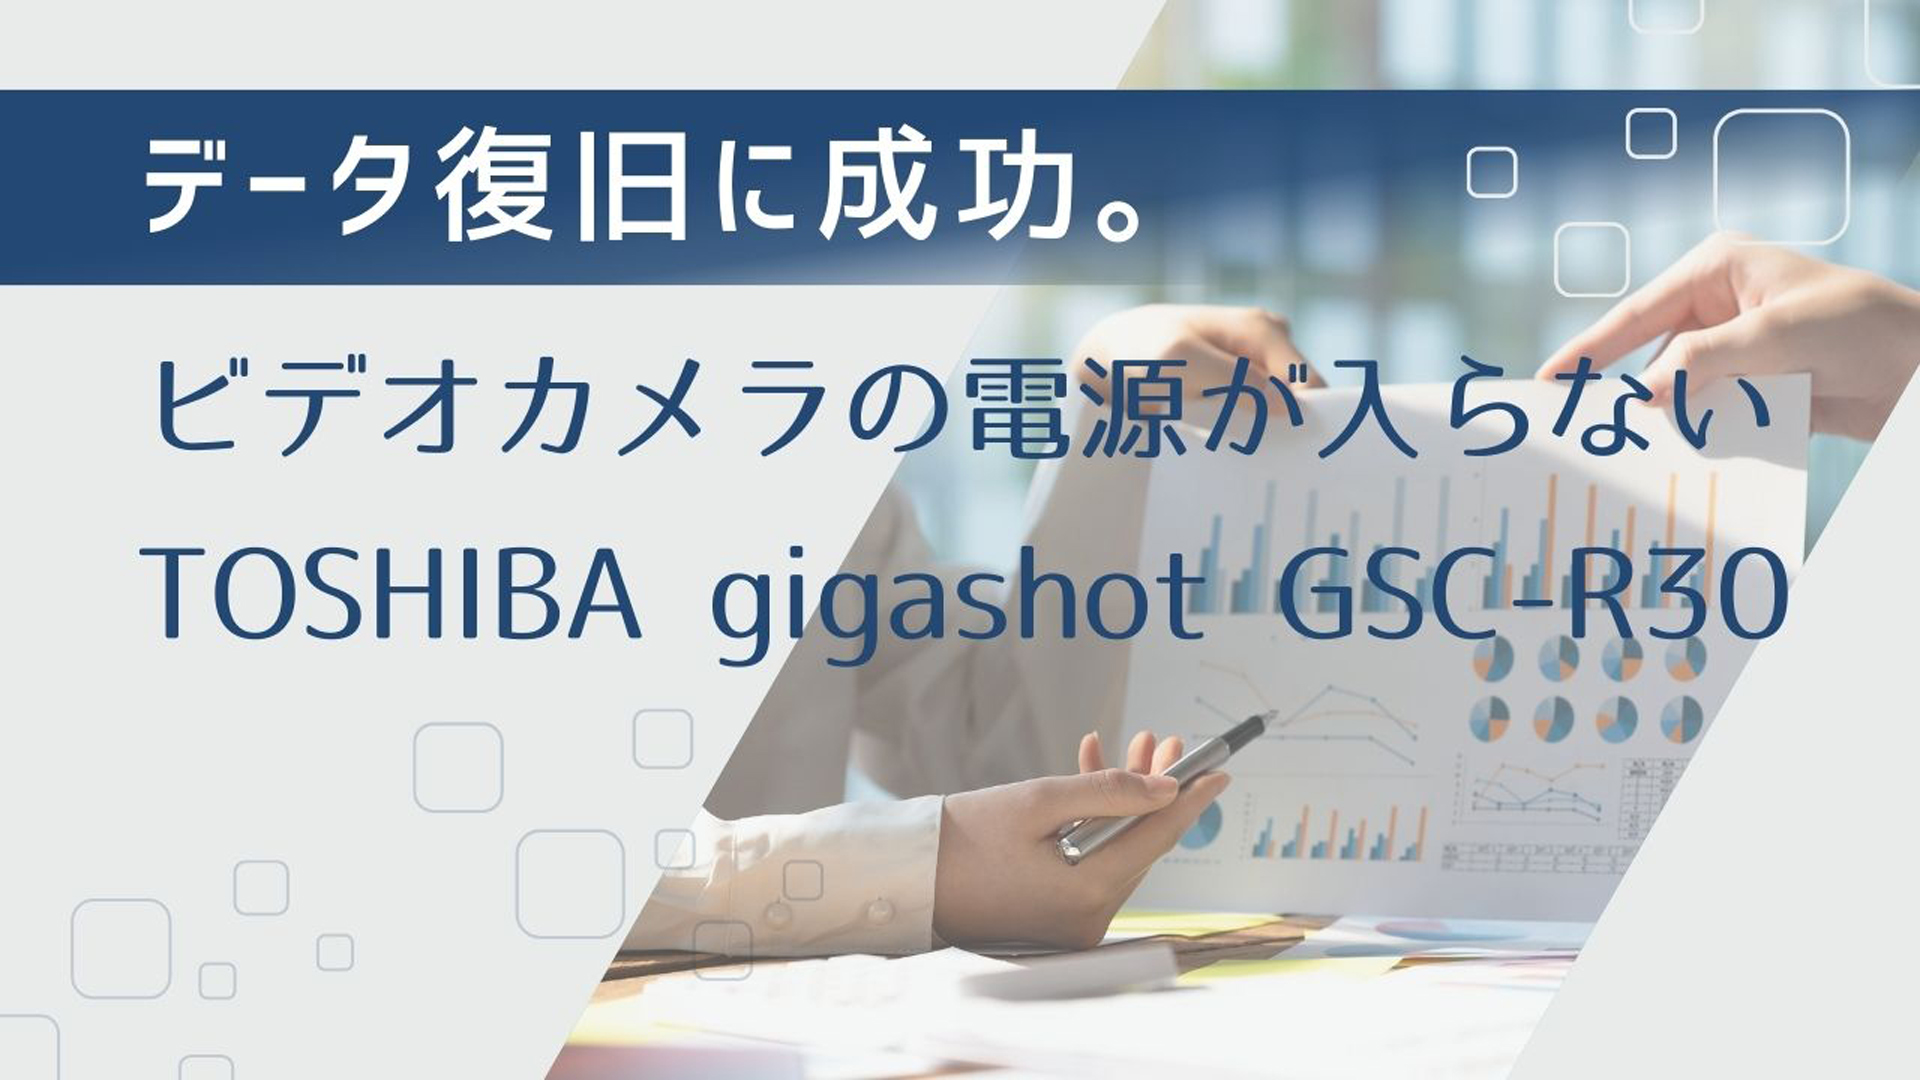 TOSHIBA gigashot GSC-R30ビデオカメラデータ復旧事例 東京江戸川区の成功談